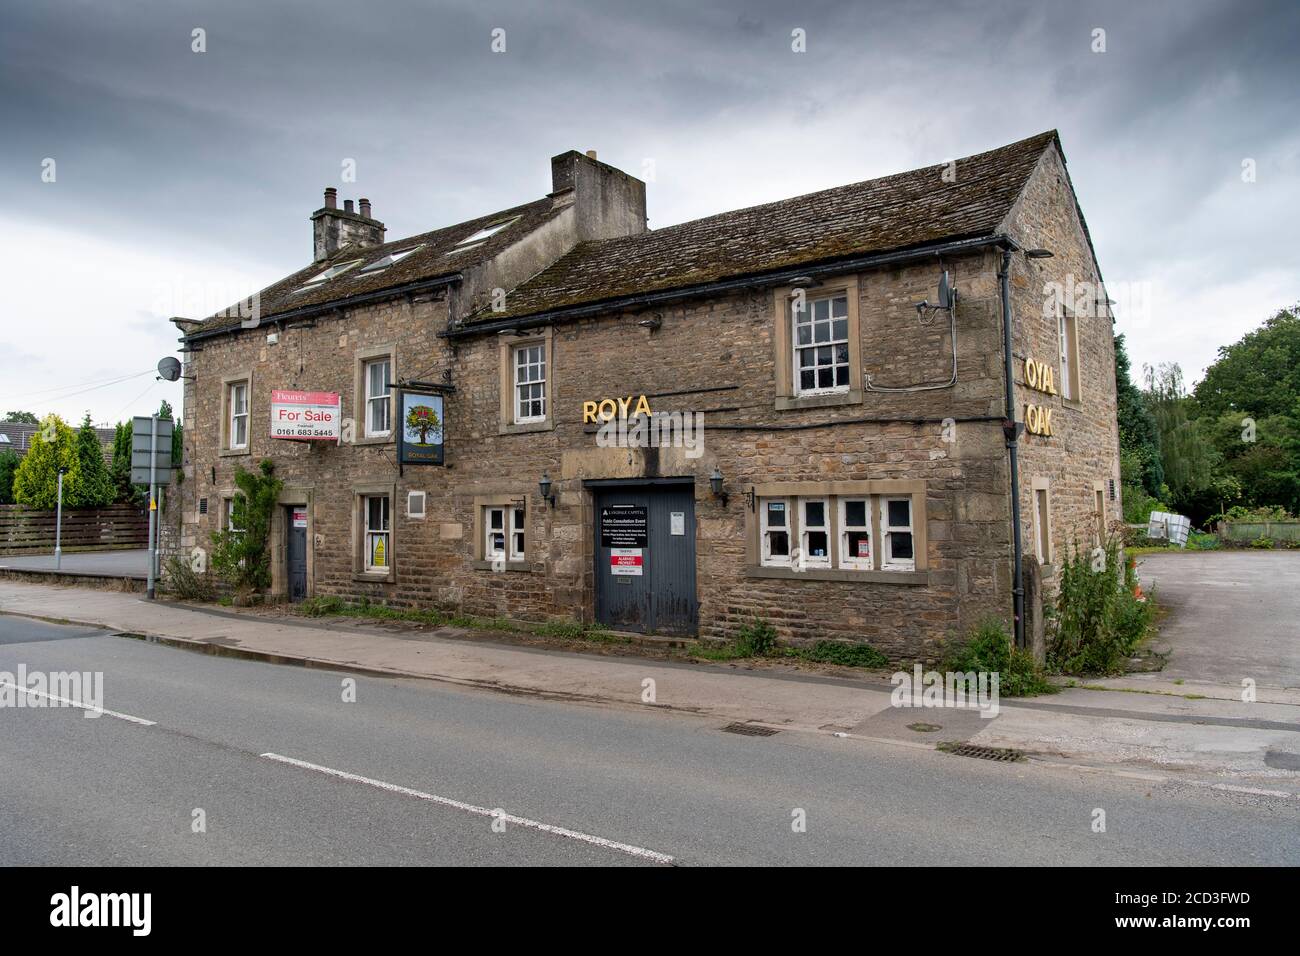 The Royal Oak, un pub rurale che è stato chiuso ed è in vendita, Hornby, Lancashire, Regno Unito. Foto Stock